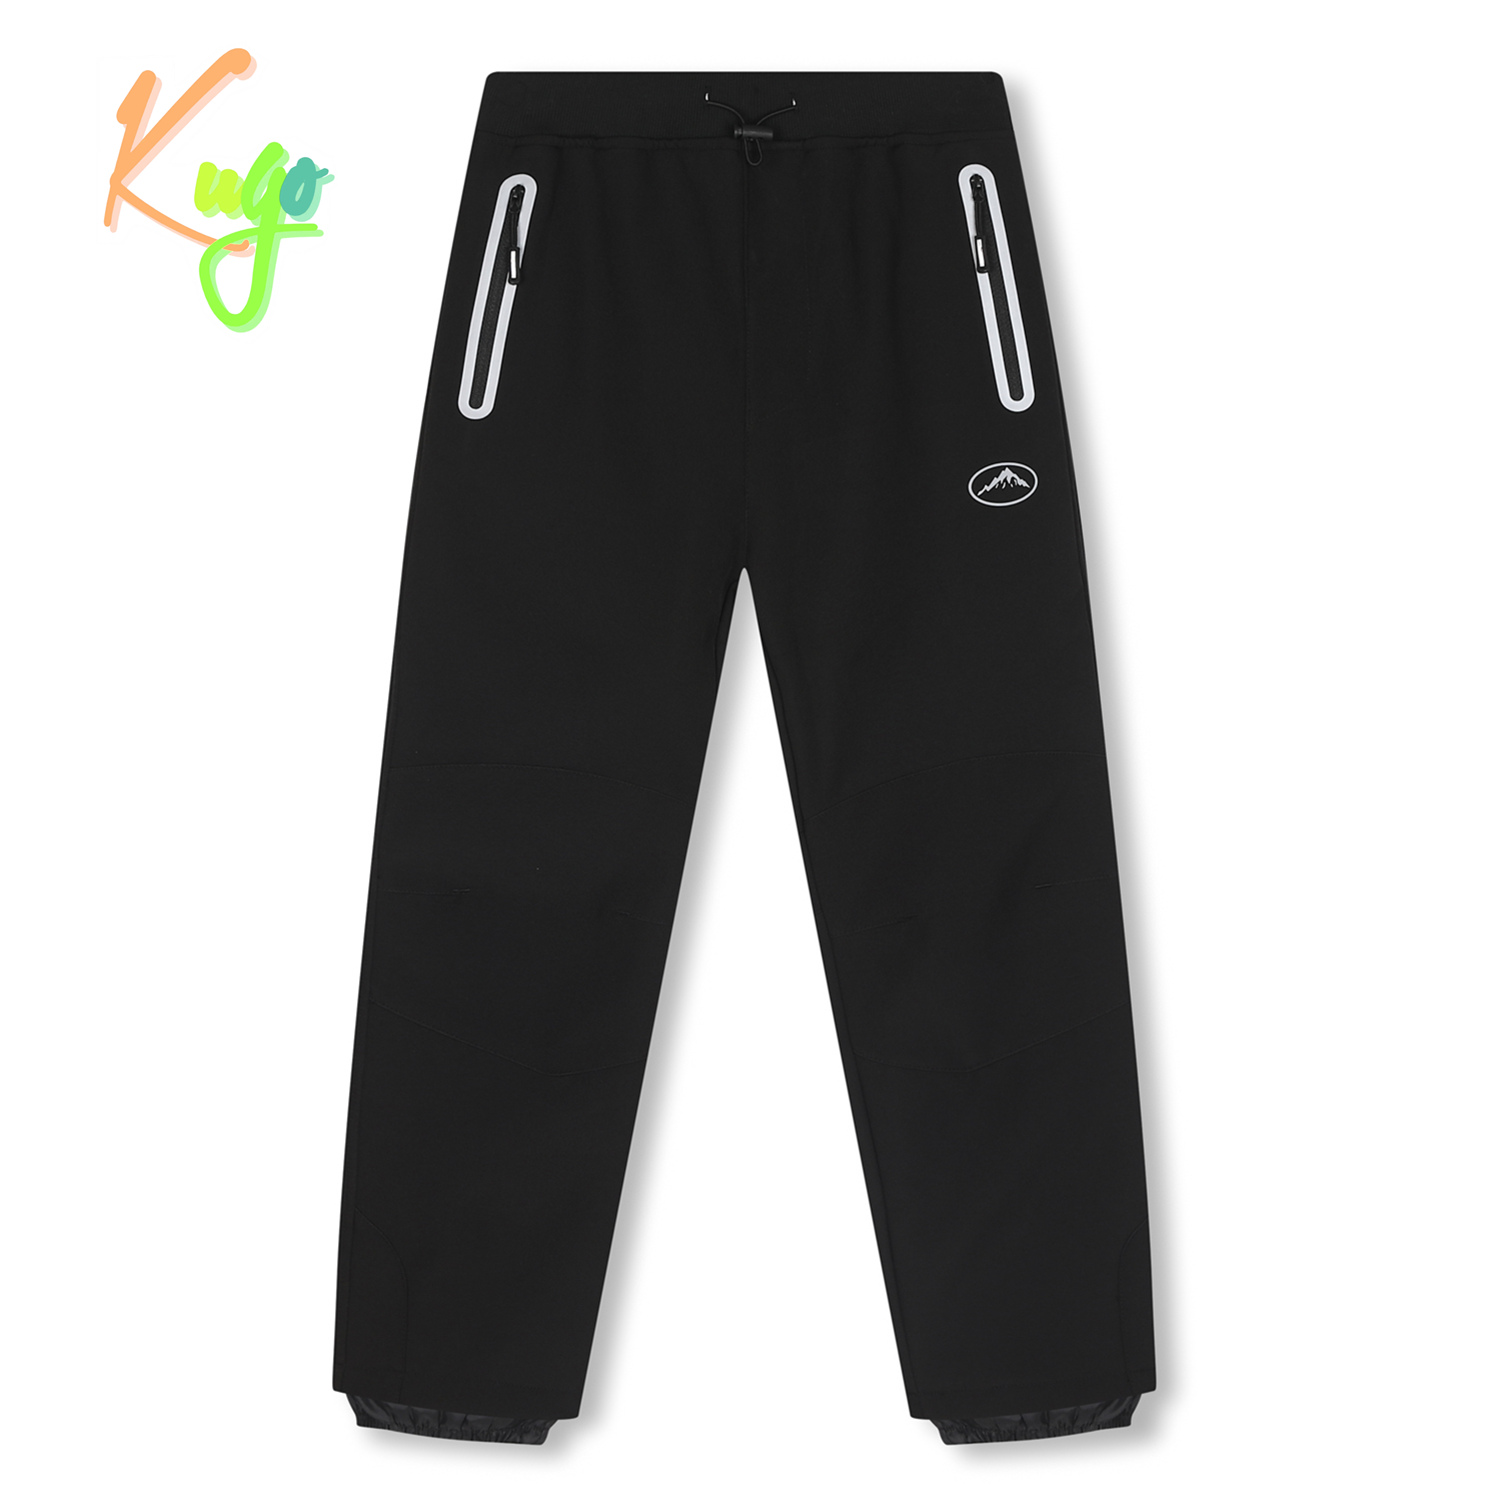 Chlapecké softshellové kalhoty, zateplené - KUGO HK2519, celočerná Barva: Černá, Velikost: 146